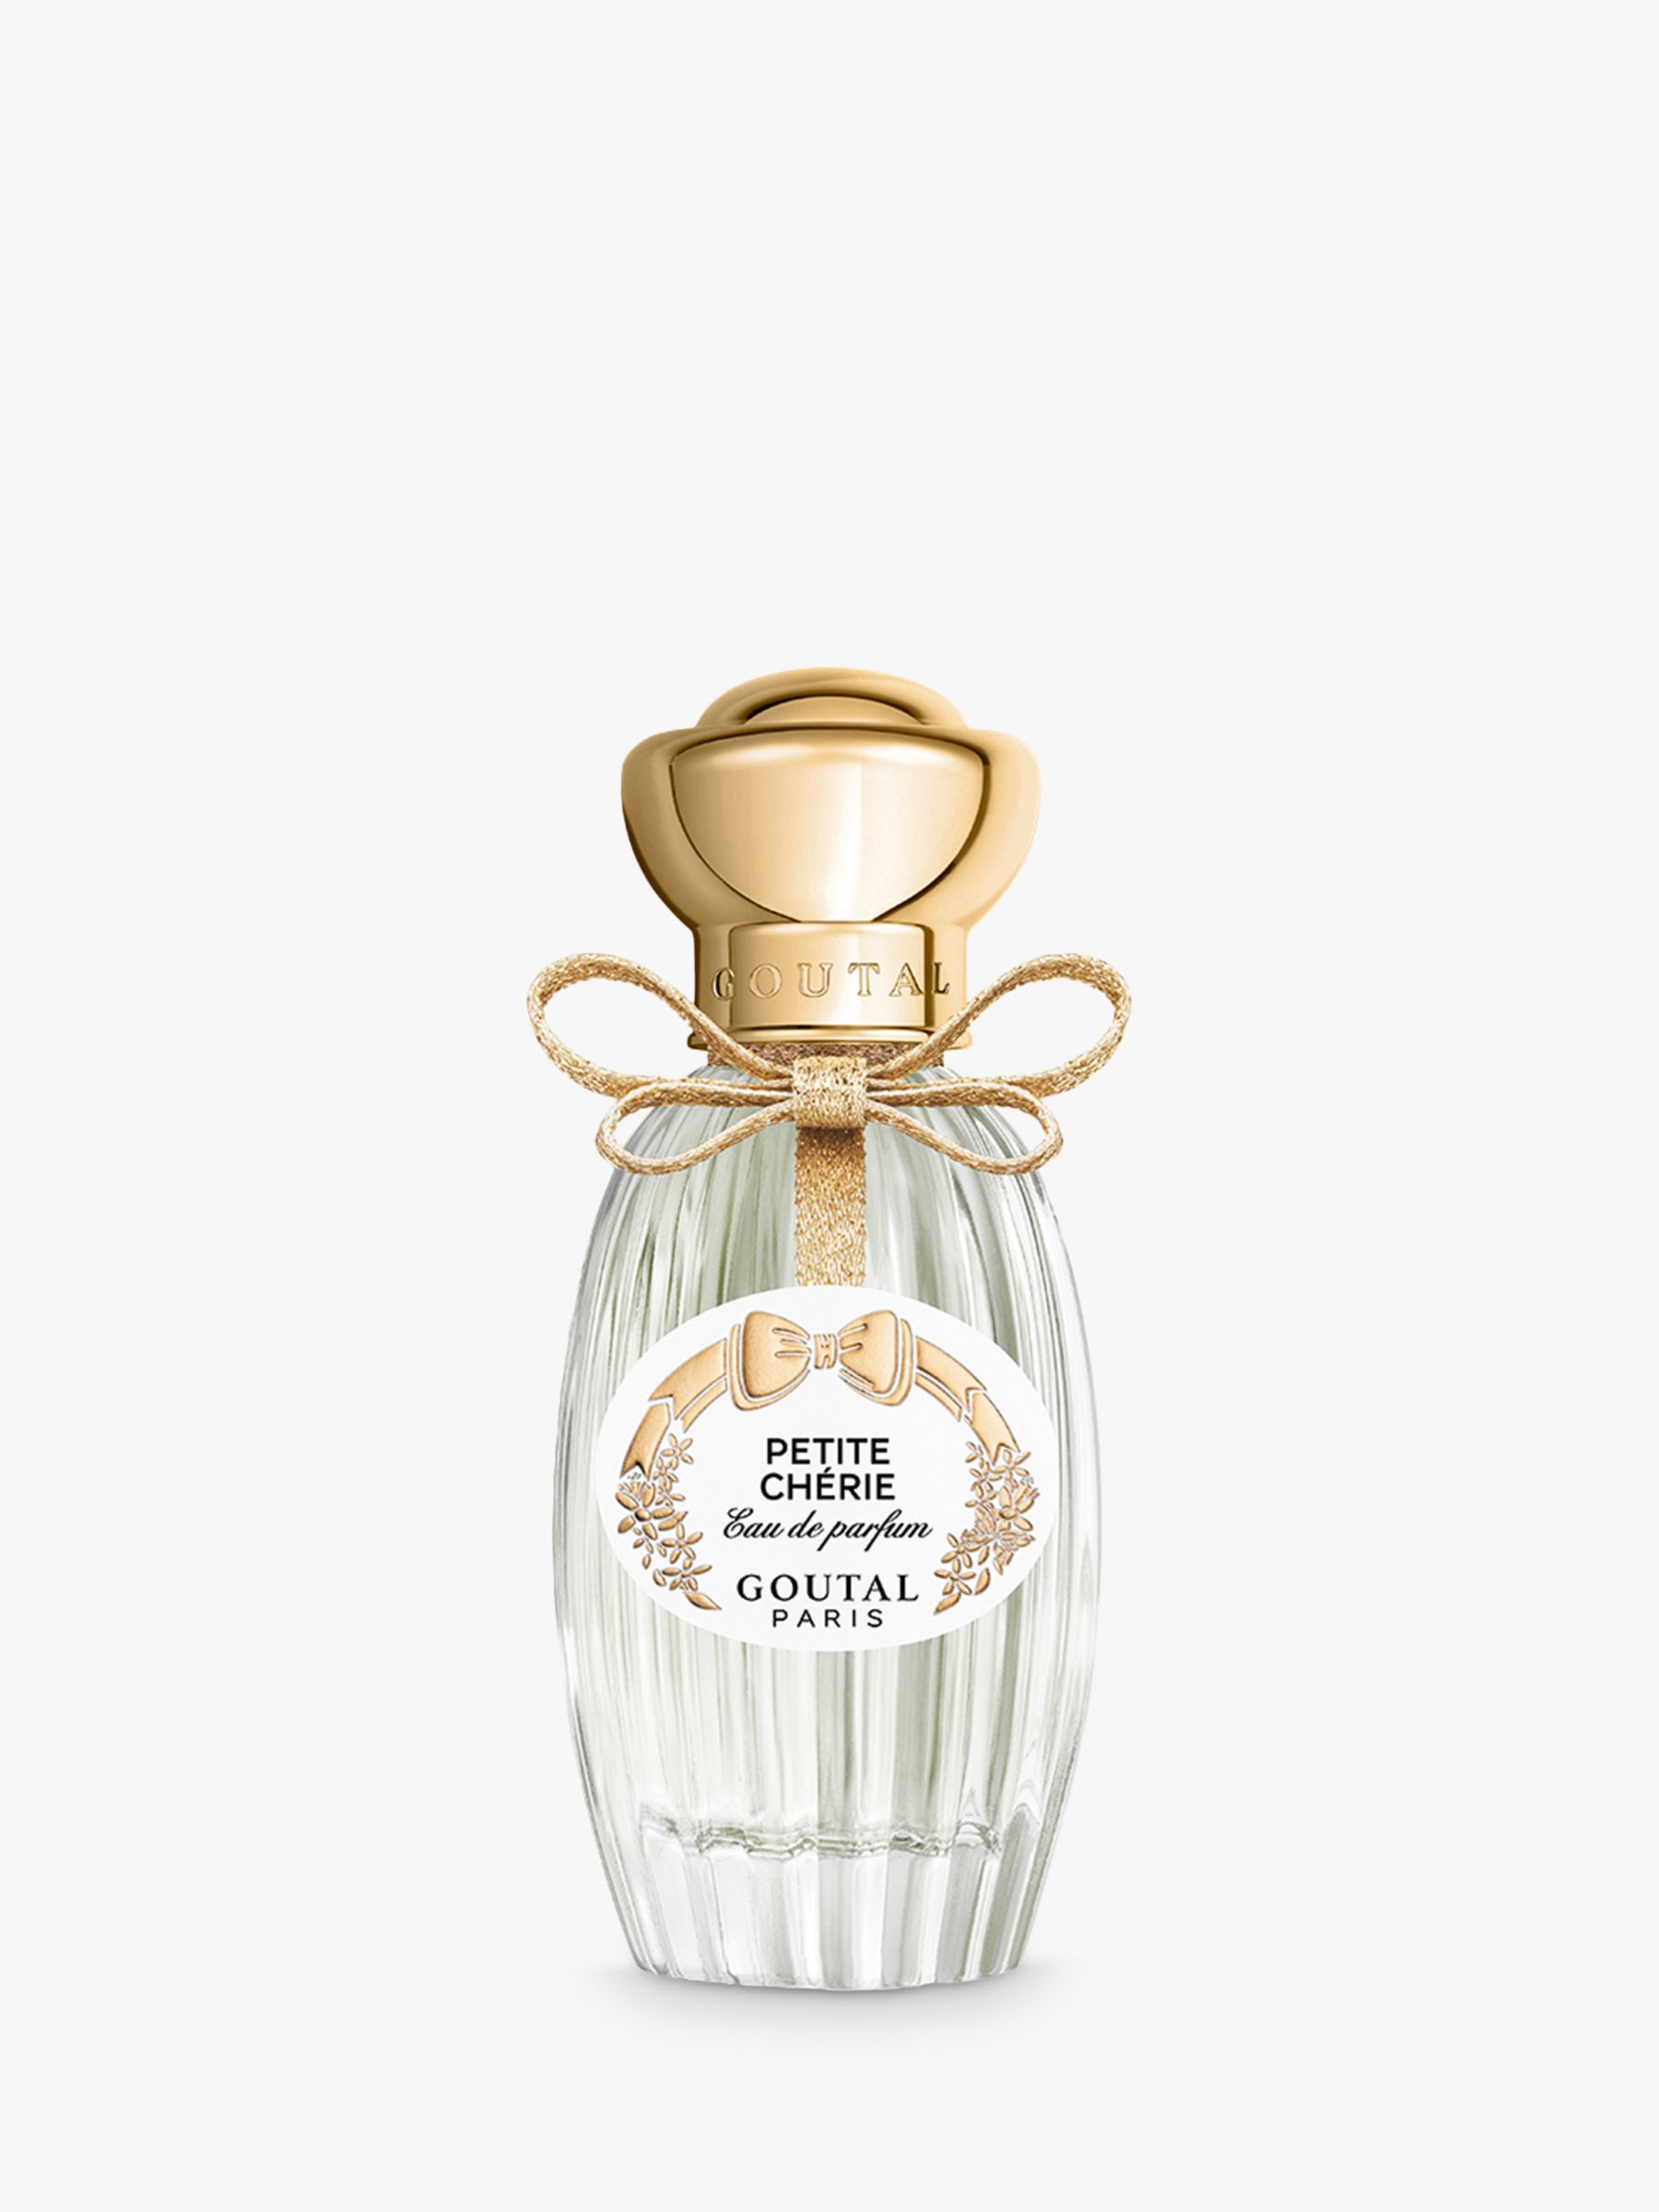 Goutal Petite Chérie Eau de Parfum, 50ml 1